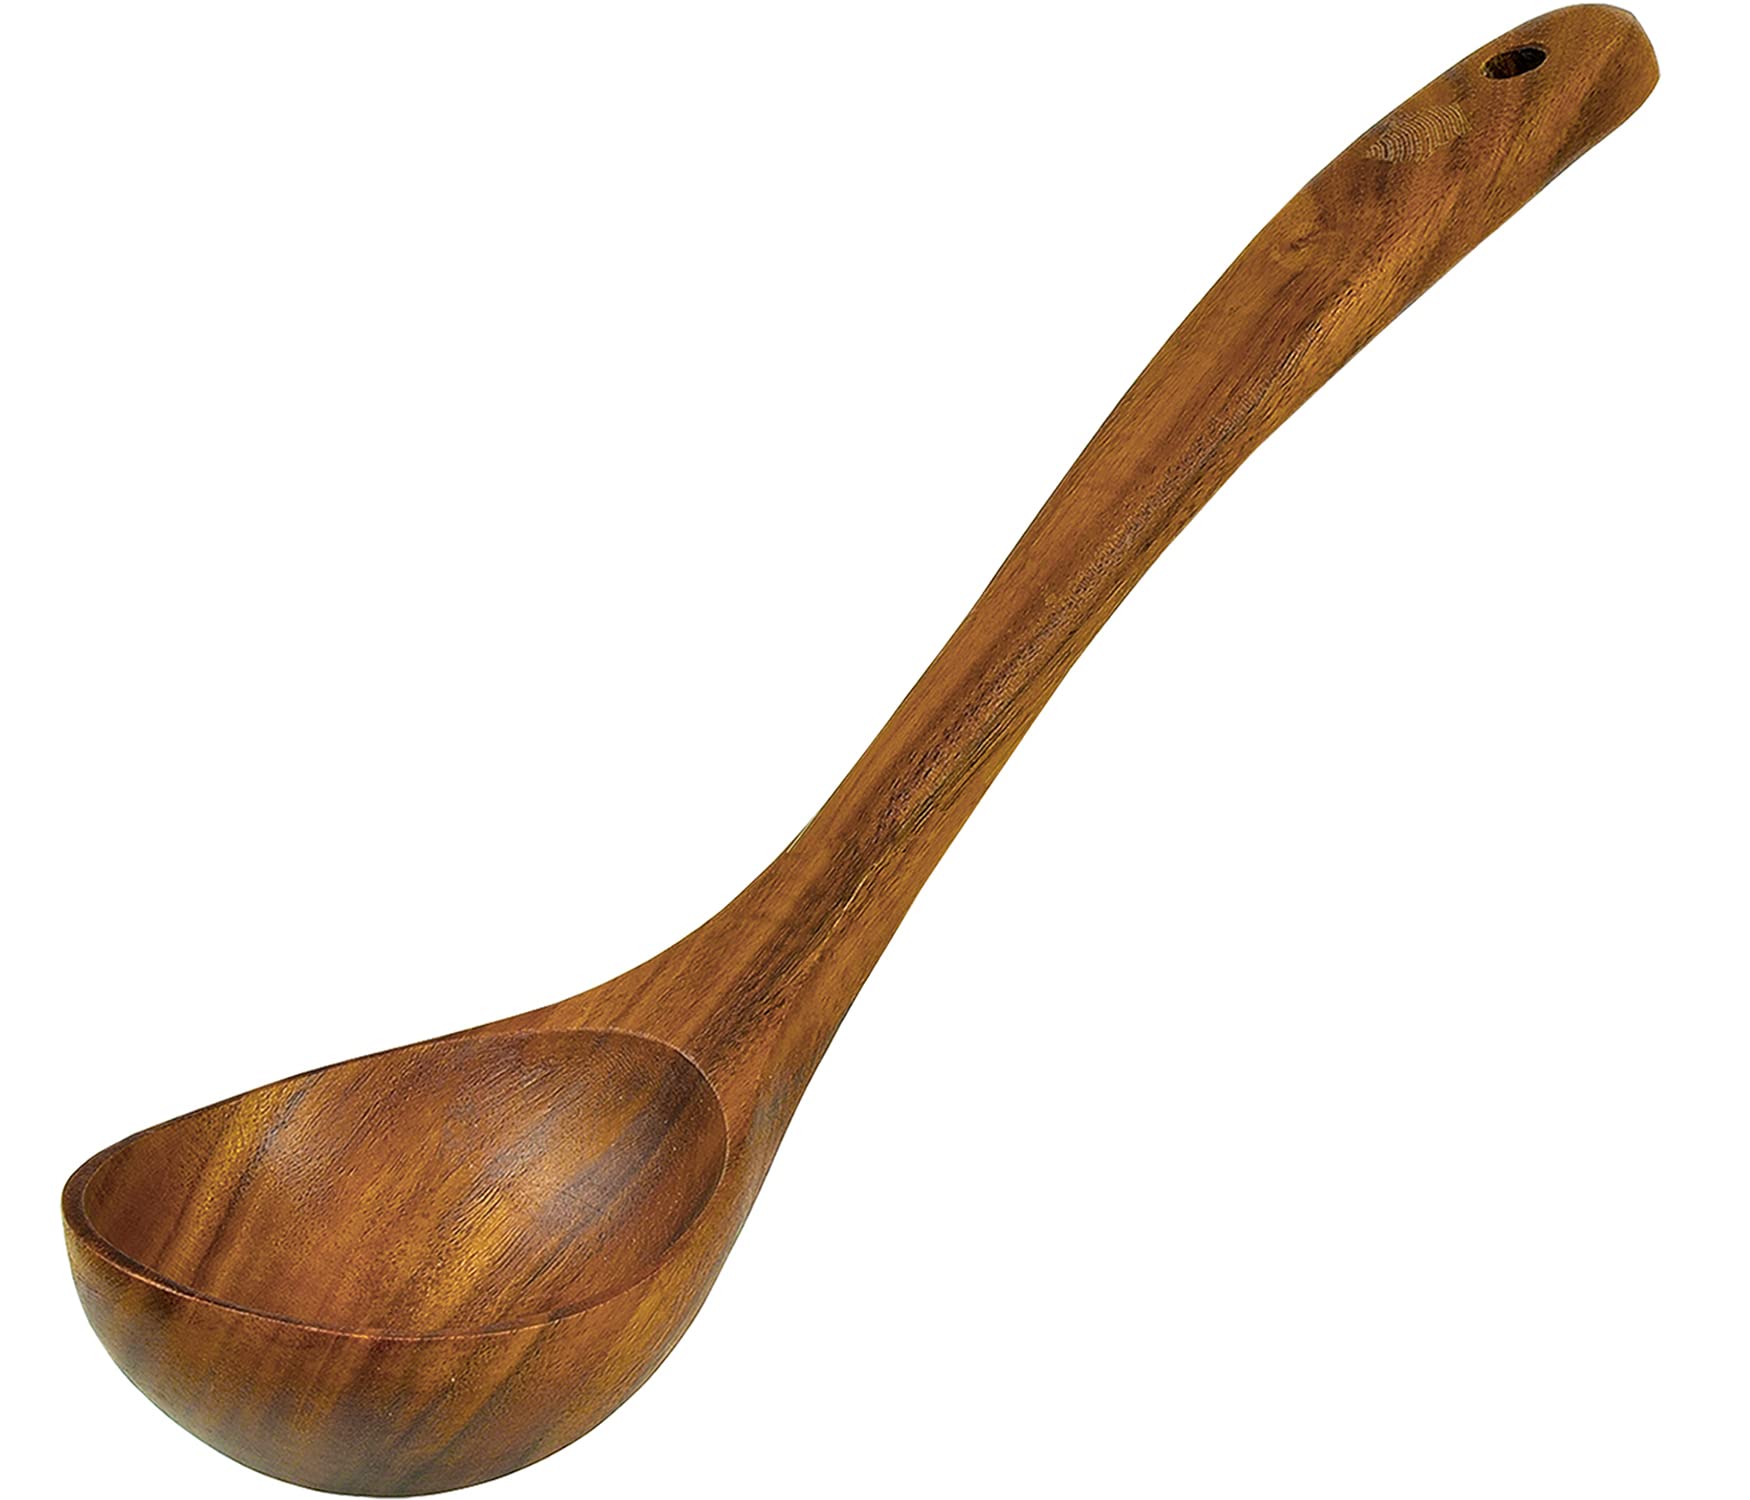 HKliving - Round Teak Spoon Ladle